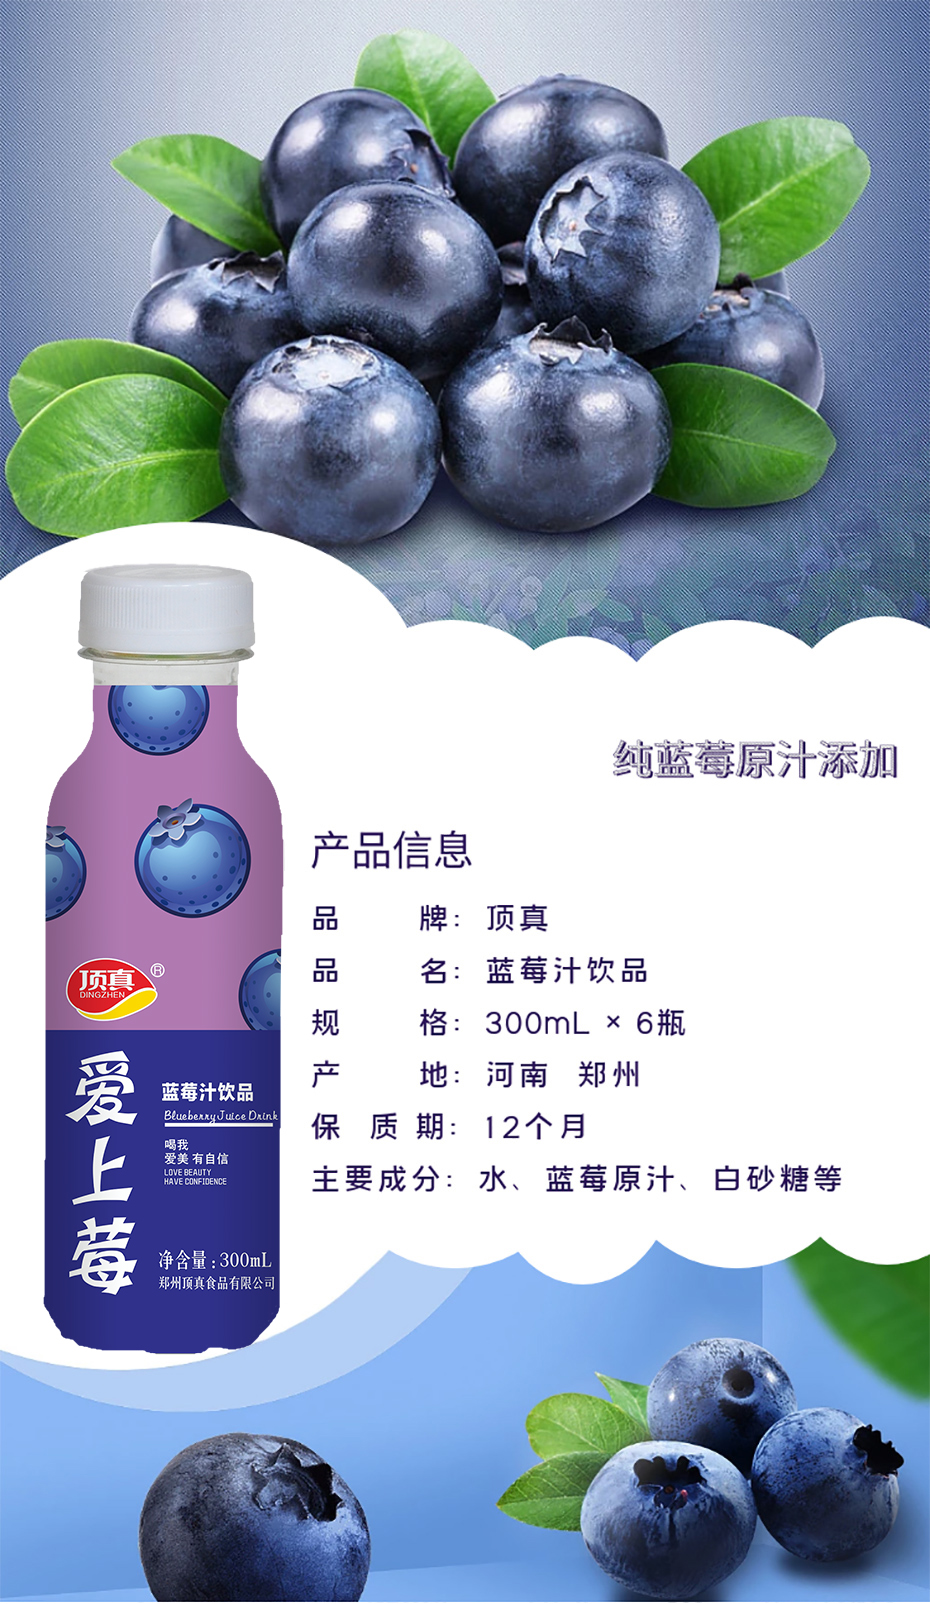 300ml藍莓汁